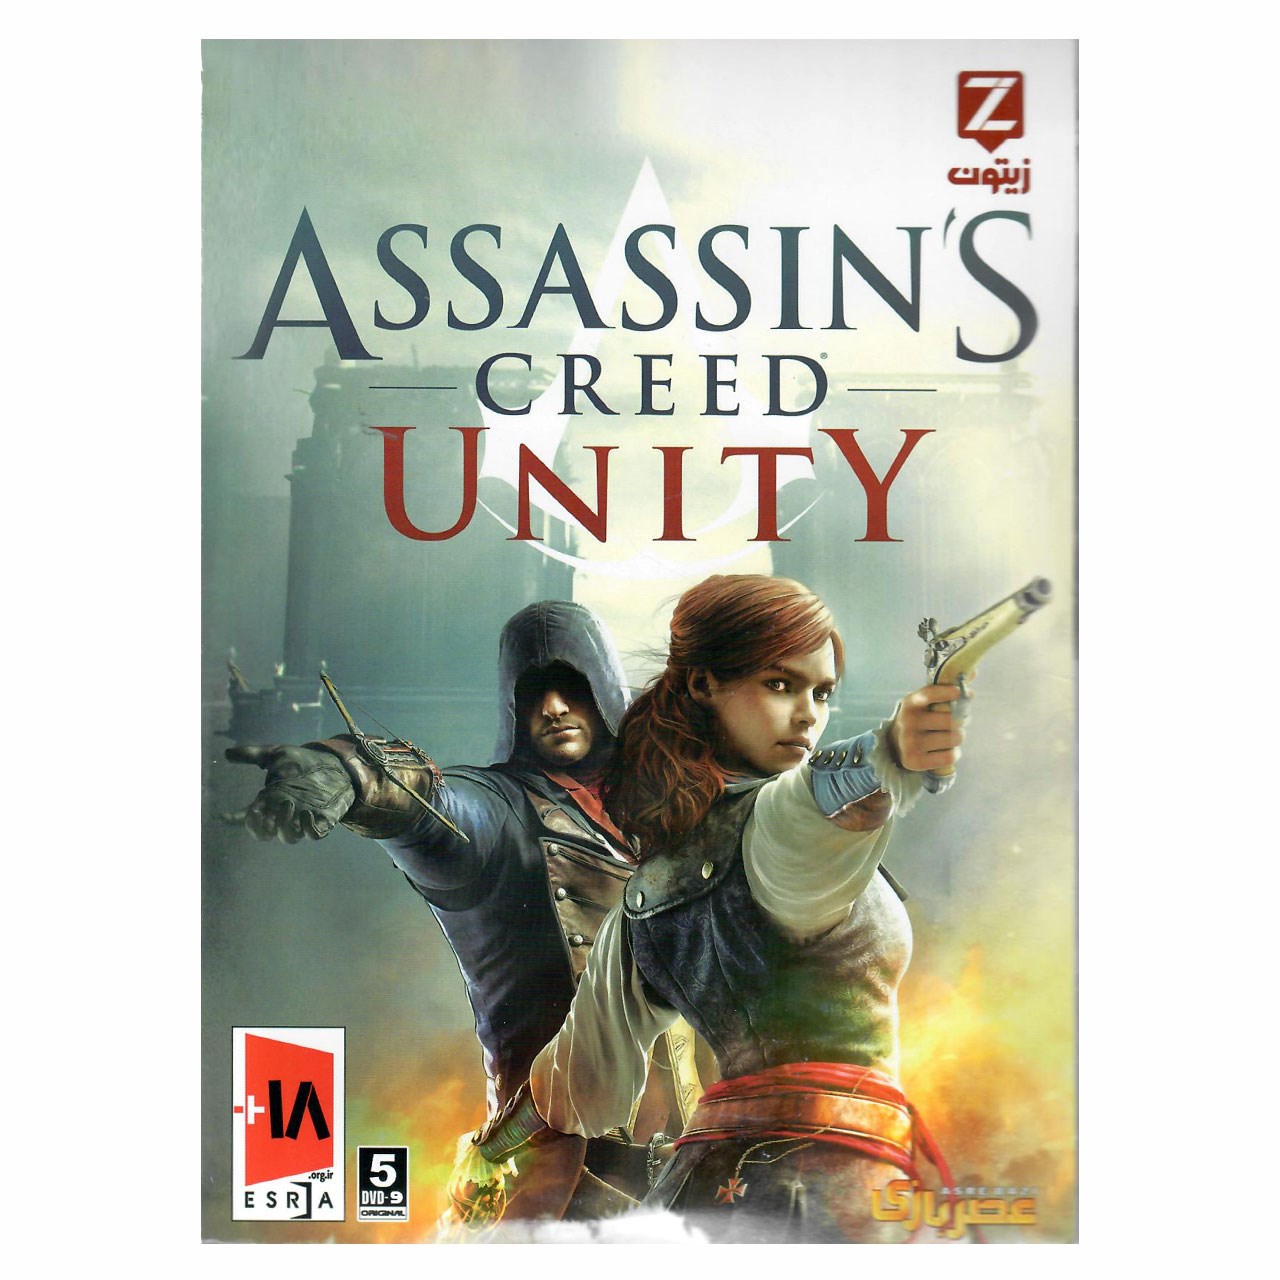 بازی کامپیوتری Assassins Creed Unity مخصوص PC